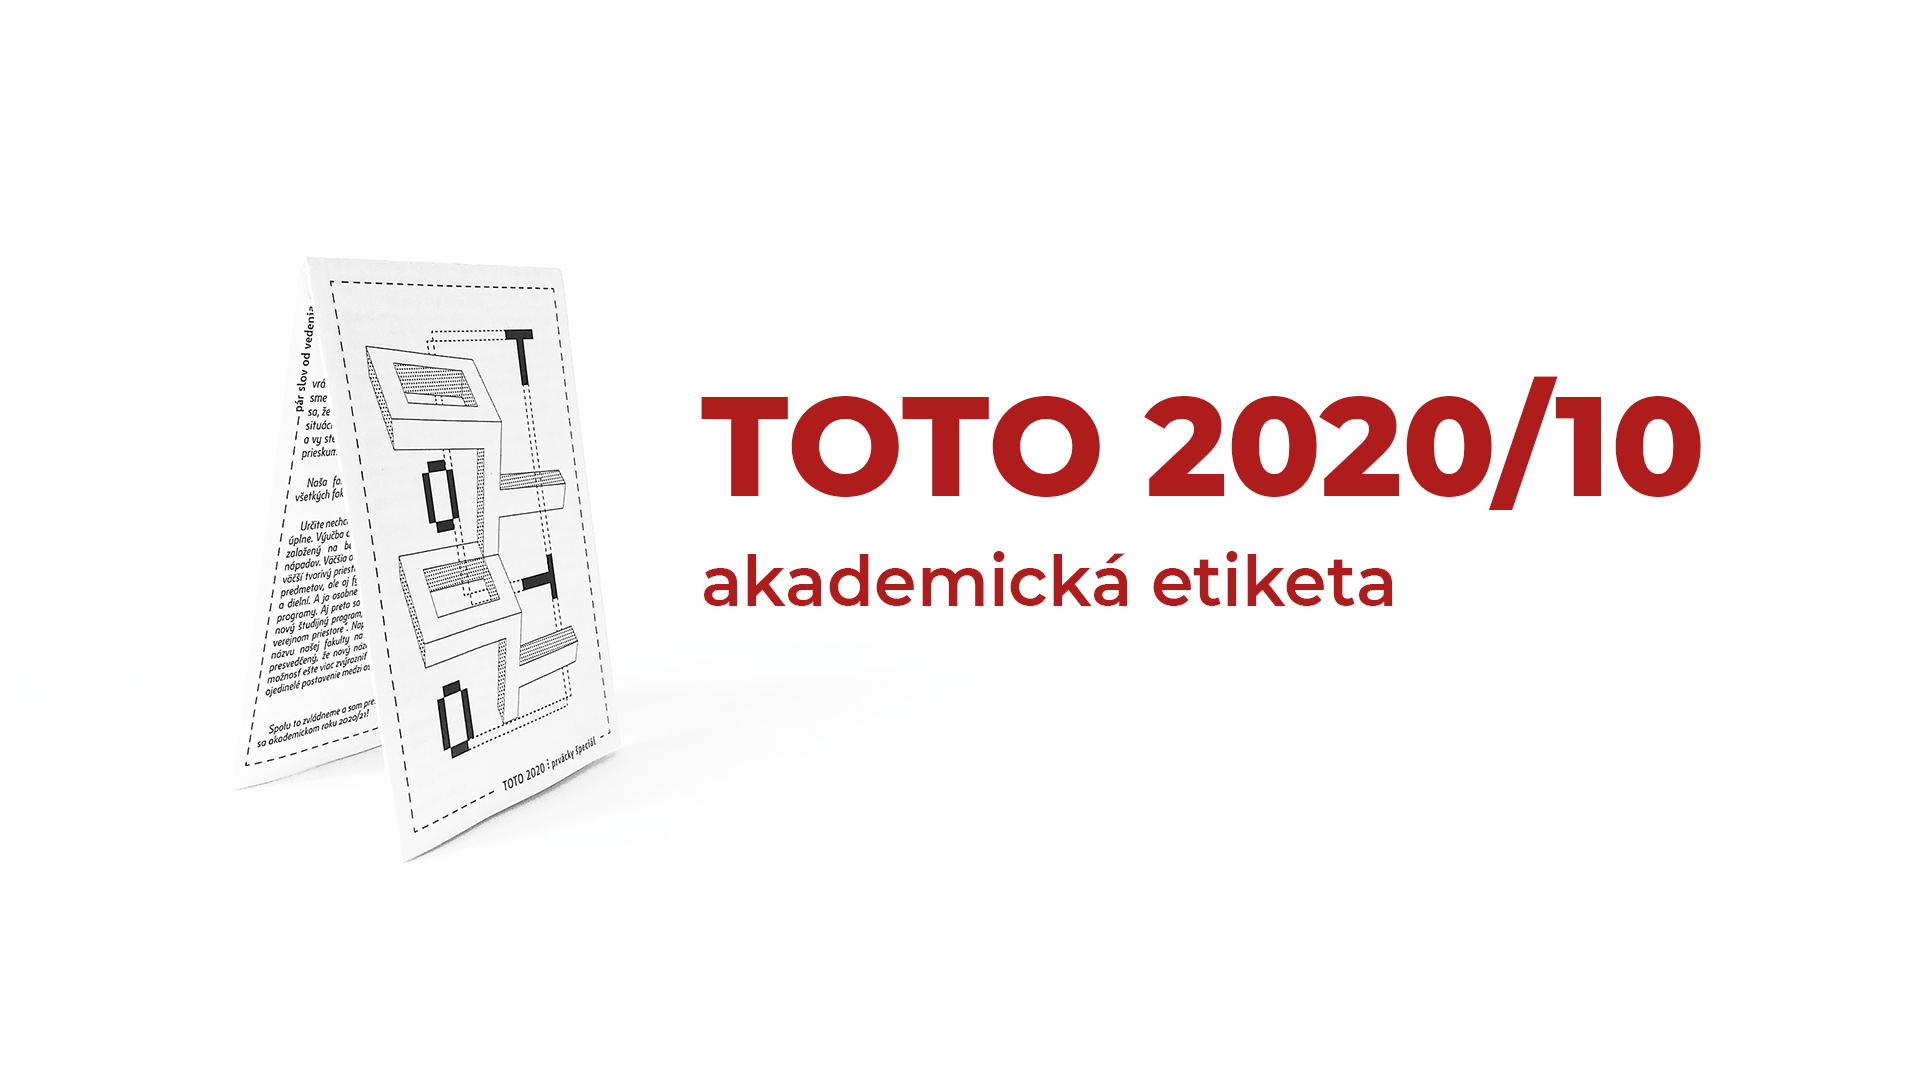 TOTO 2020/10 ⋮ akademická etiketa